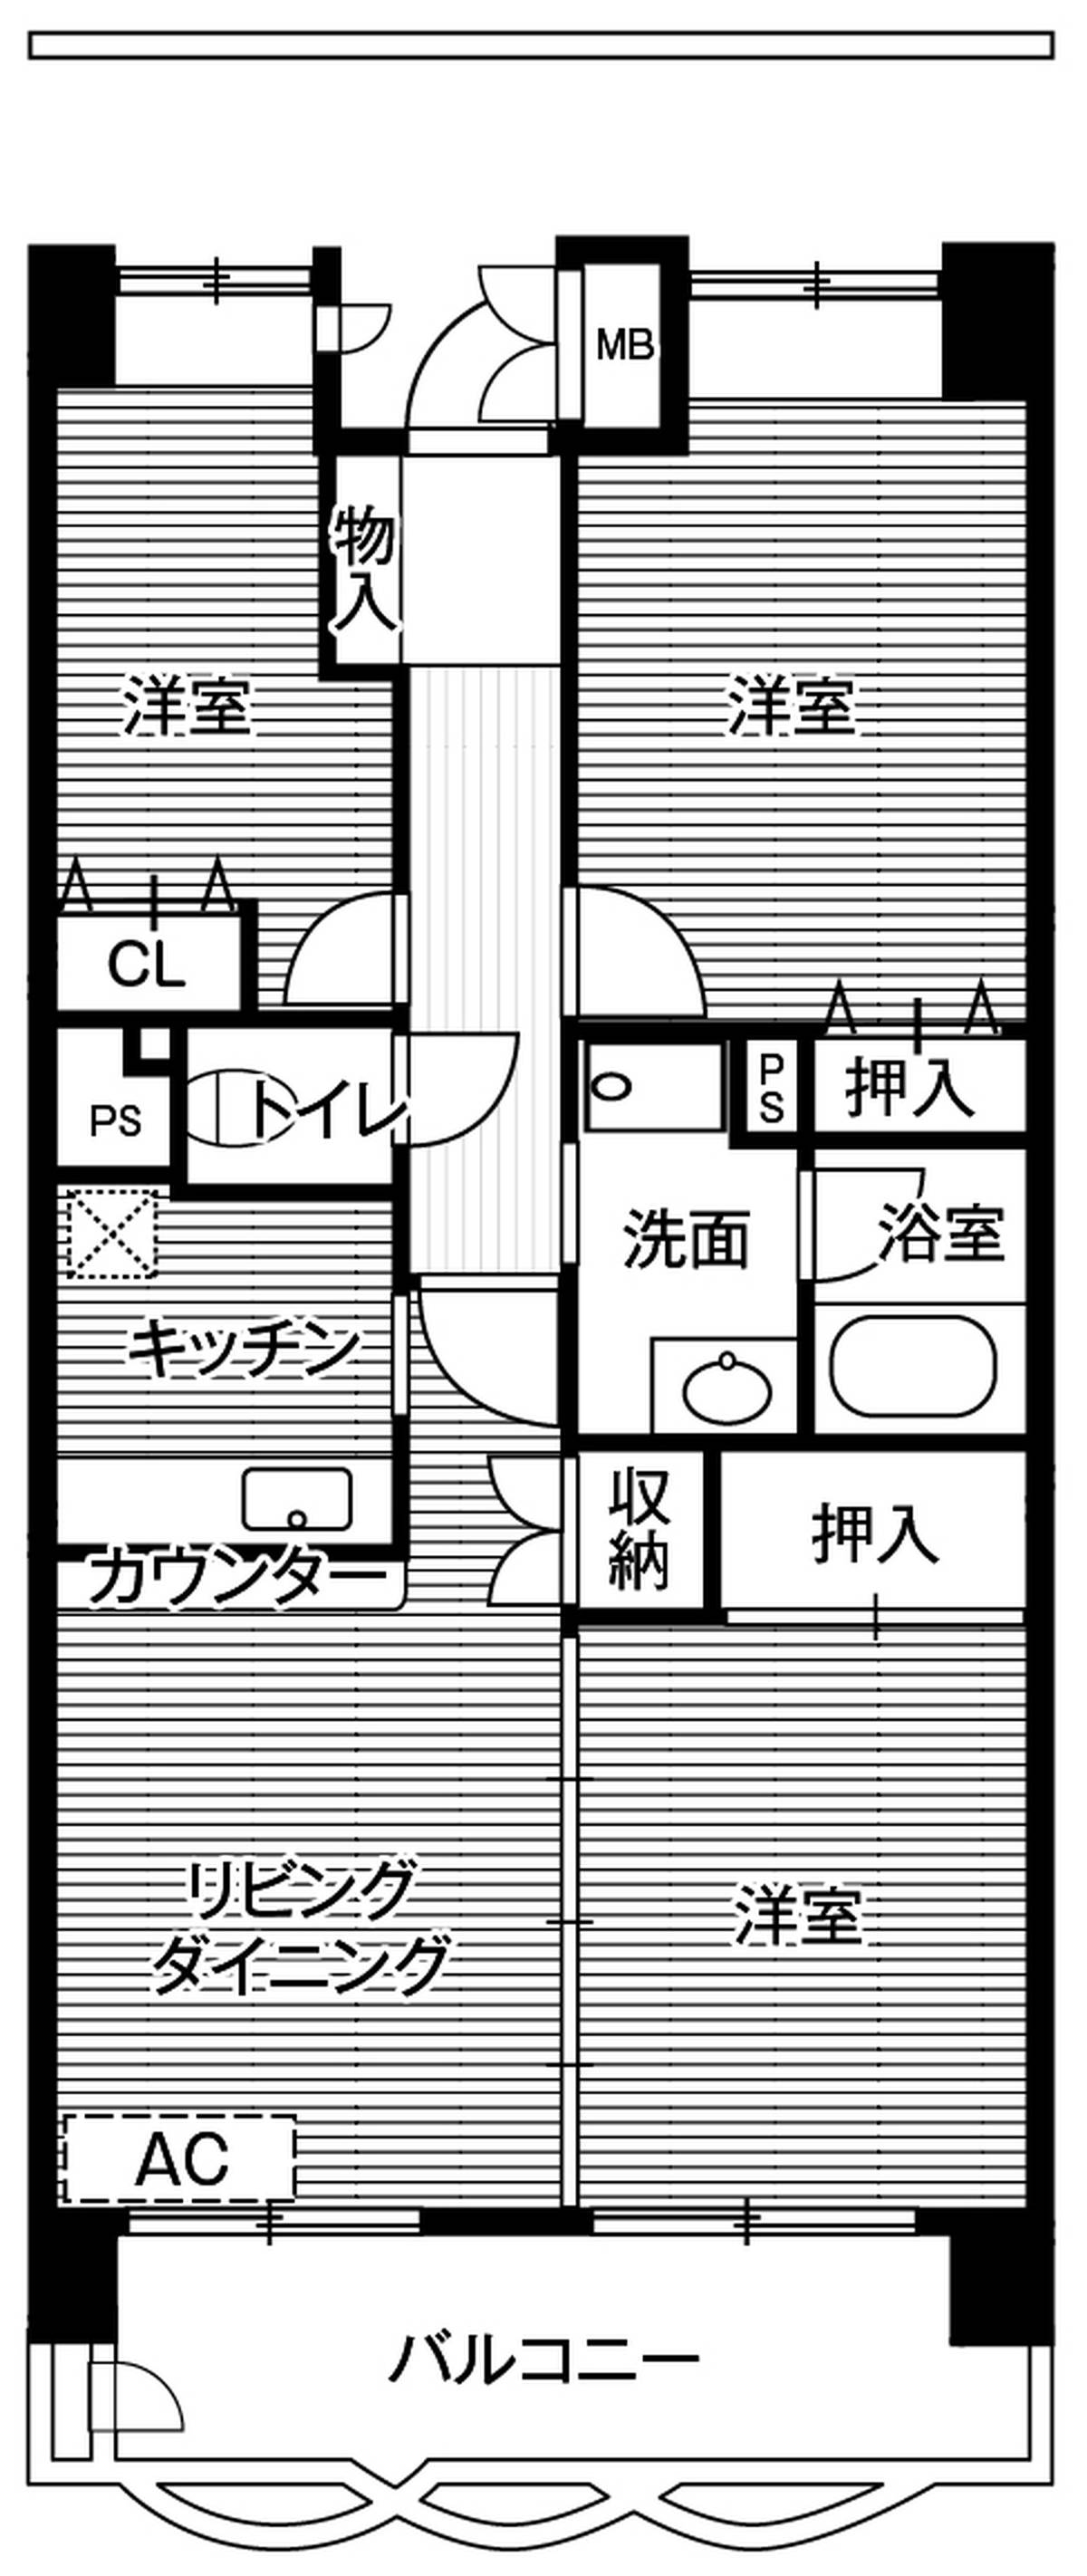 Sơ đồ phòng 3LDK của Village House Shiomi Tower ở Koto-ku